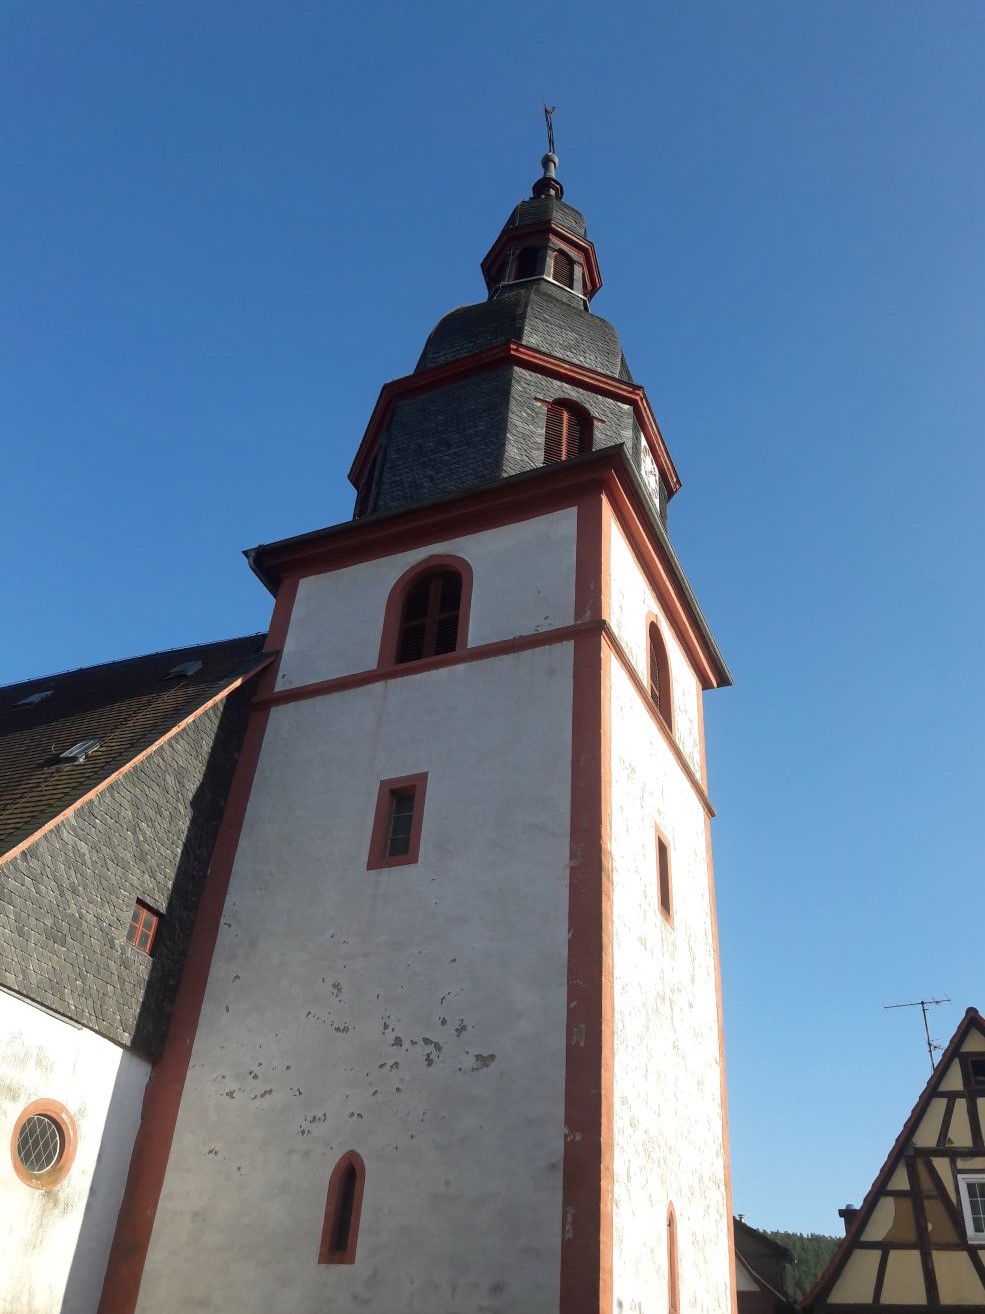 Die Kirche in Neustadt datiert sich an ihrem Turmeingang 1480. In der Zeit des 17./18.Jahrhunderts wurde die Kirche zu klein und in größeren Umbauarbeiten vergrößert. Dabei erhielt sie auch ihre barocke Ausgestaltung. Zu den Besonderheiten zählen ein noch